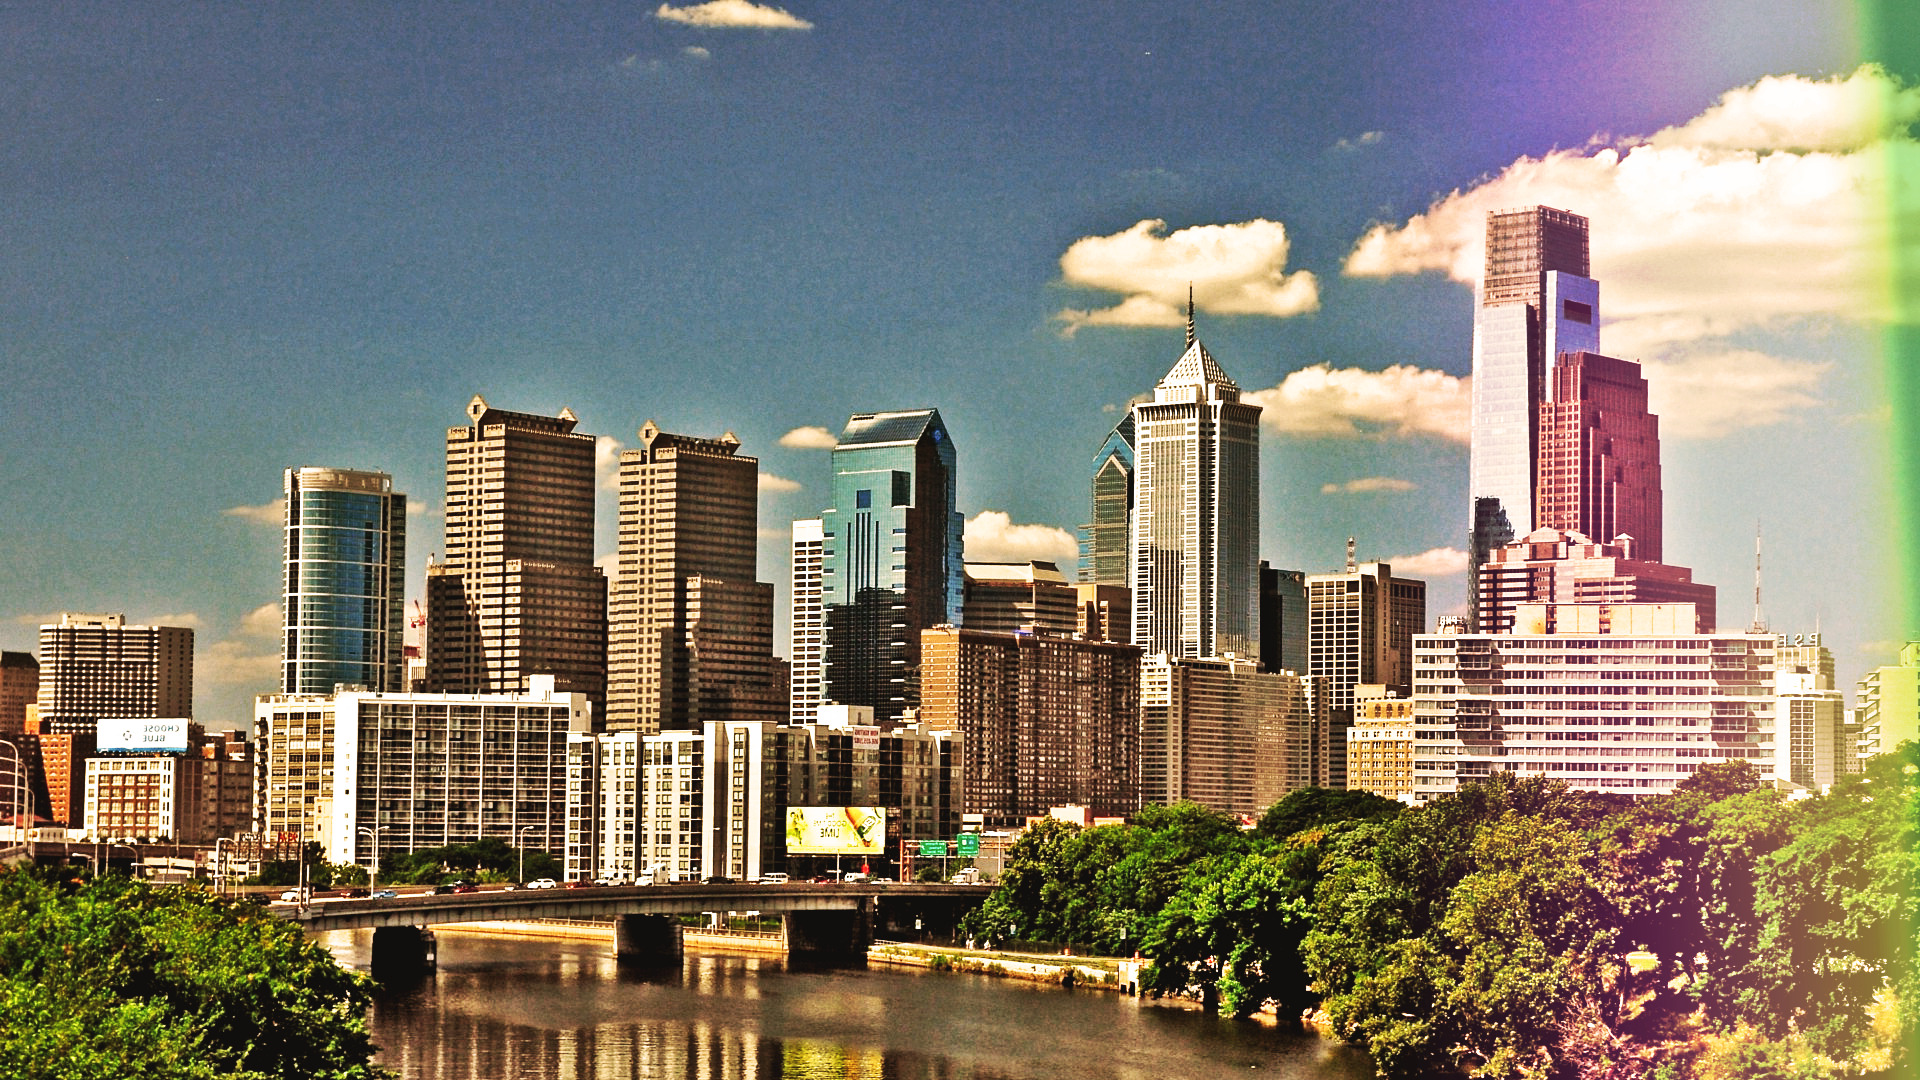 Philadelphia, HDR, Cityscape, Building, River, Bridge, Clouds, Reflection Wallpaper